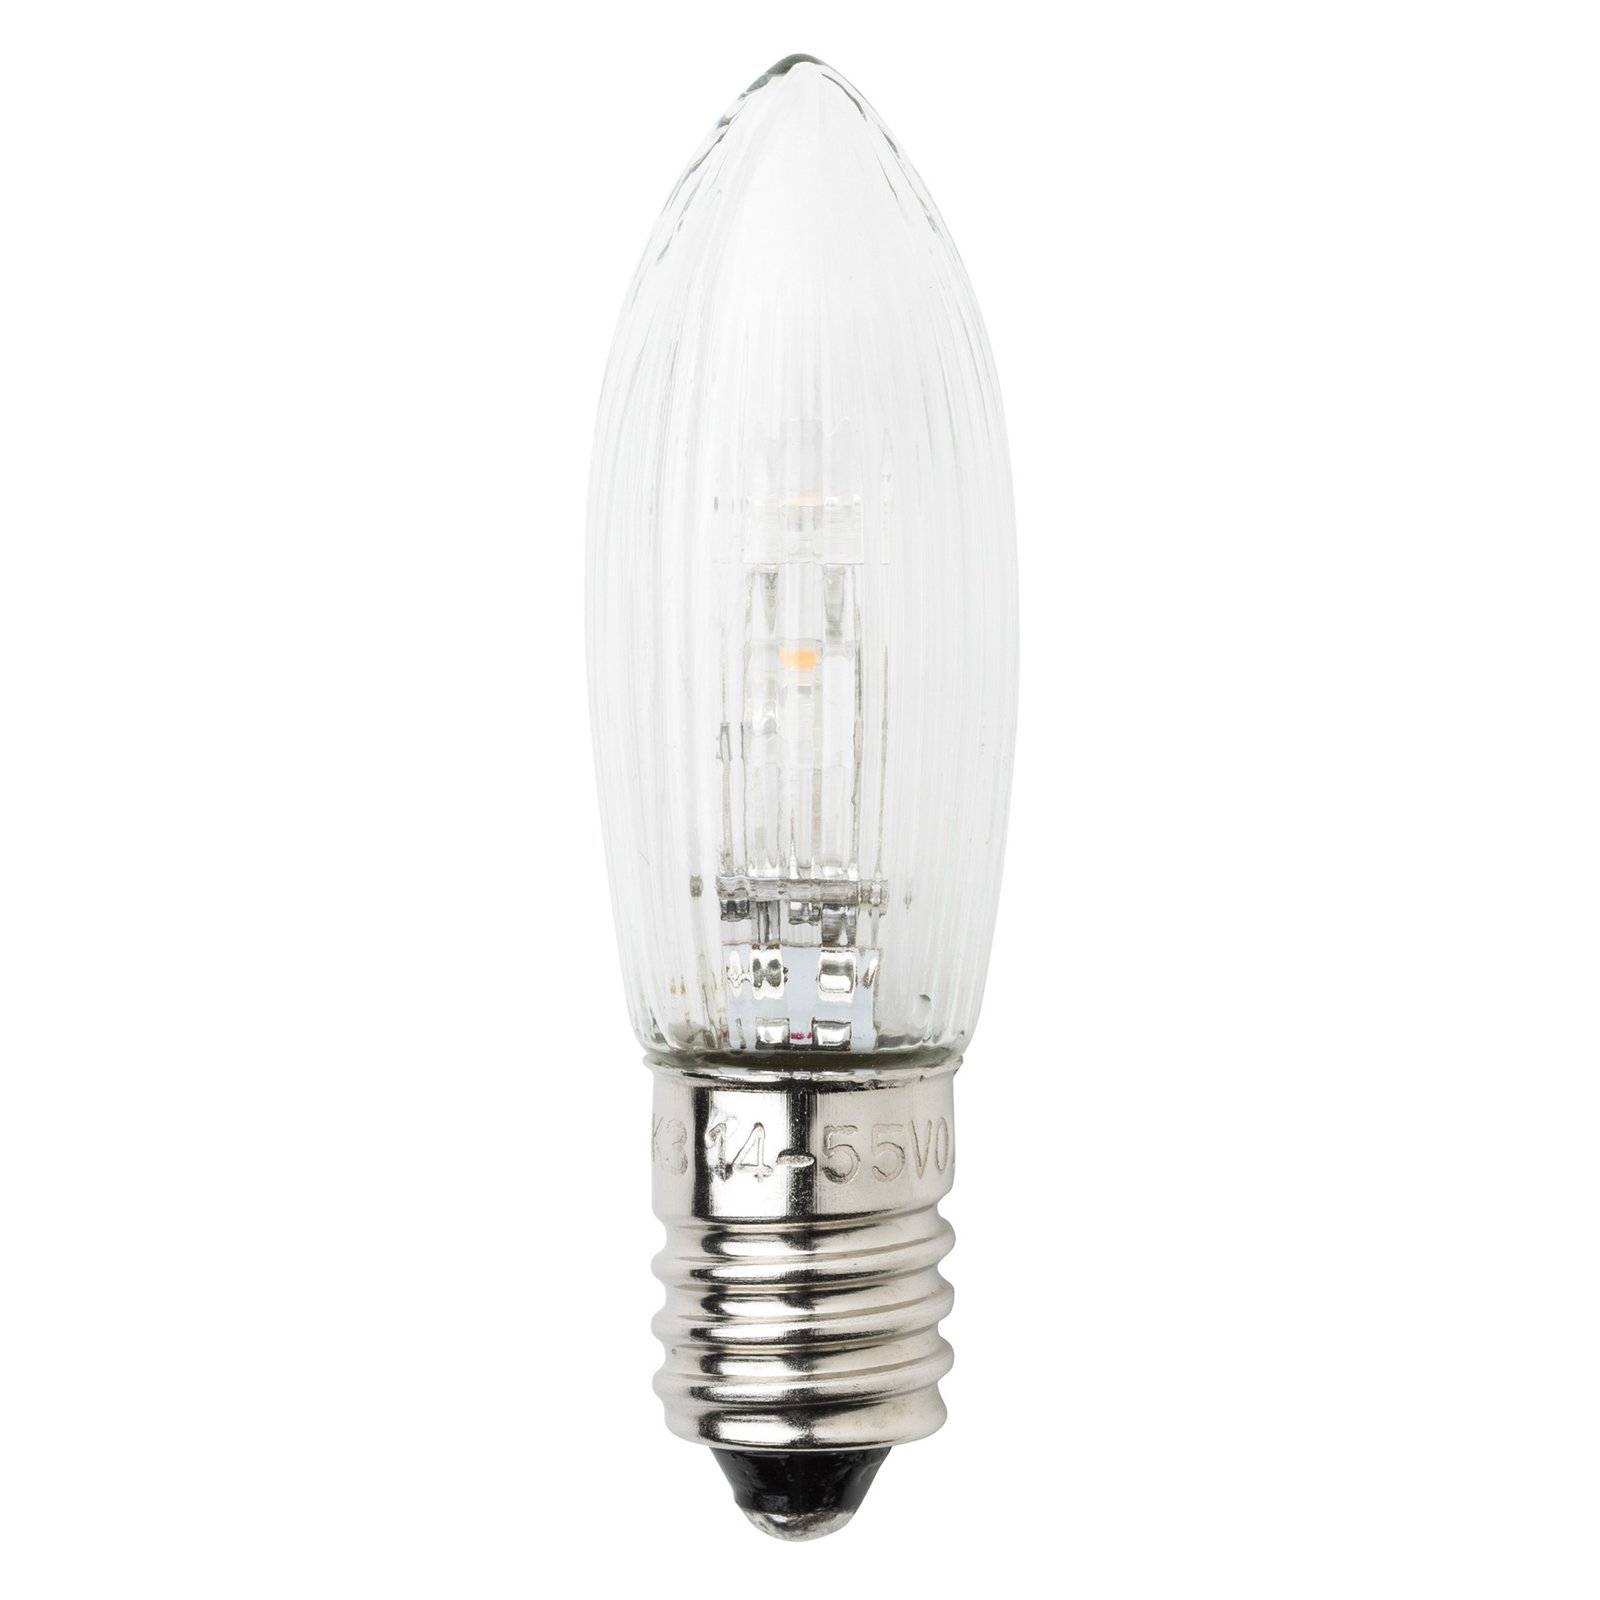 E10-14-55V-led-reservelampen van 0,3W, 3st. kaarsv